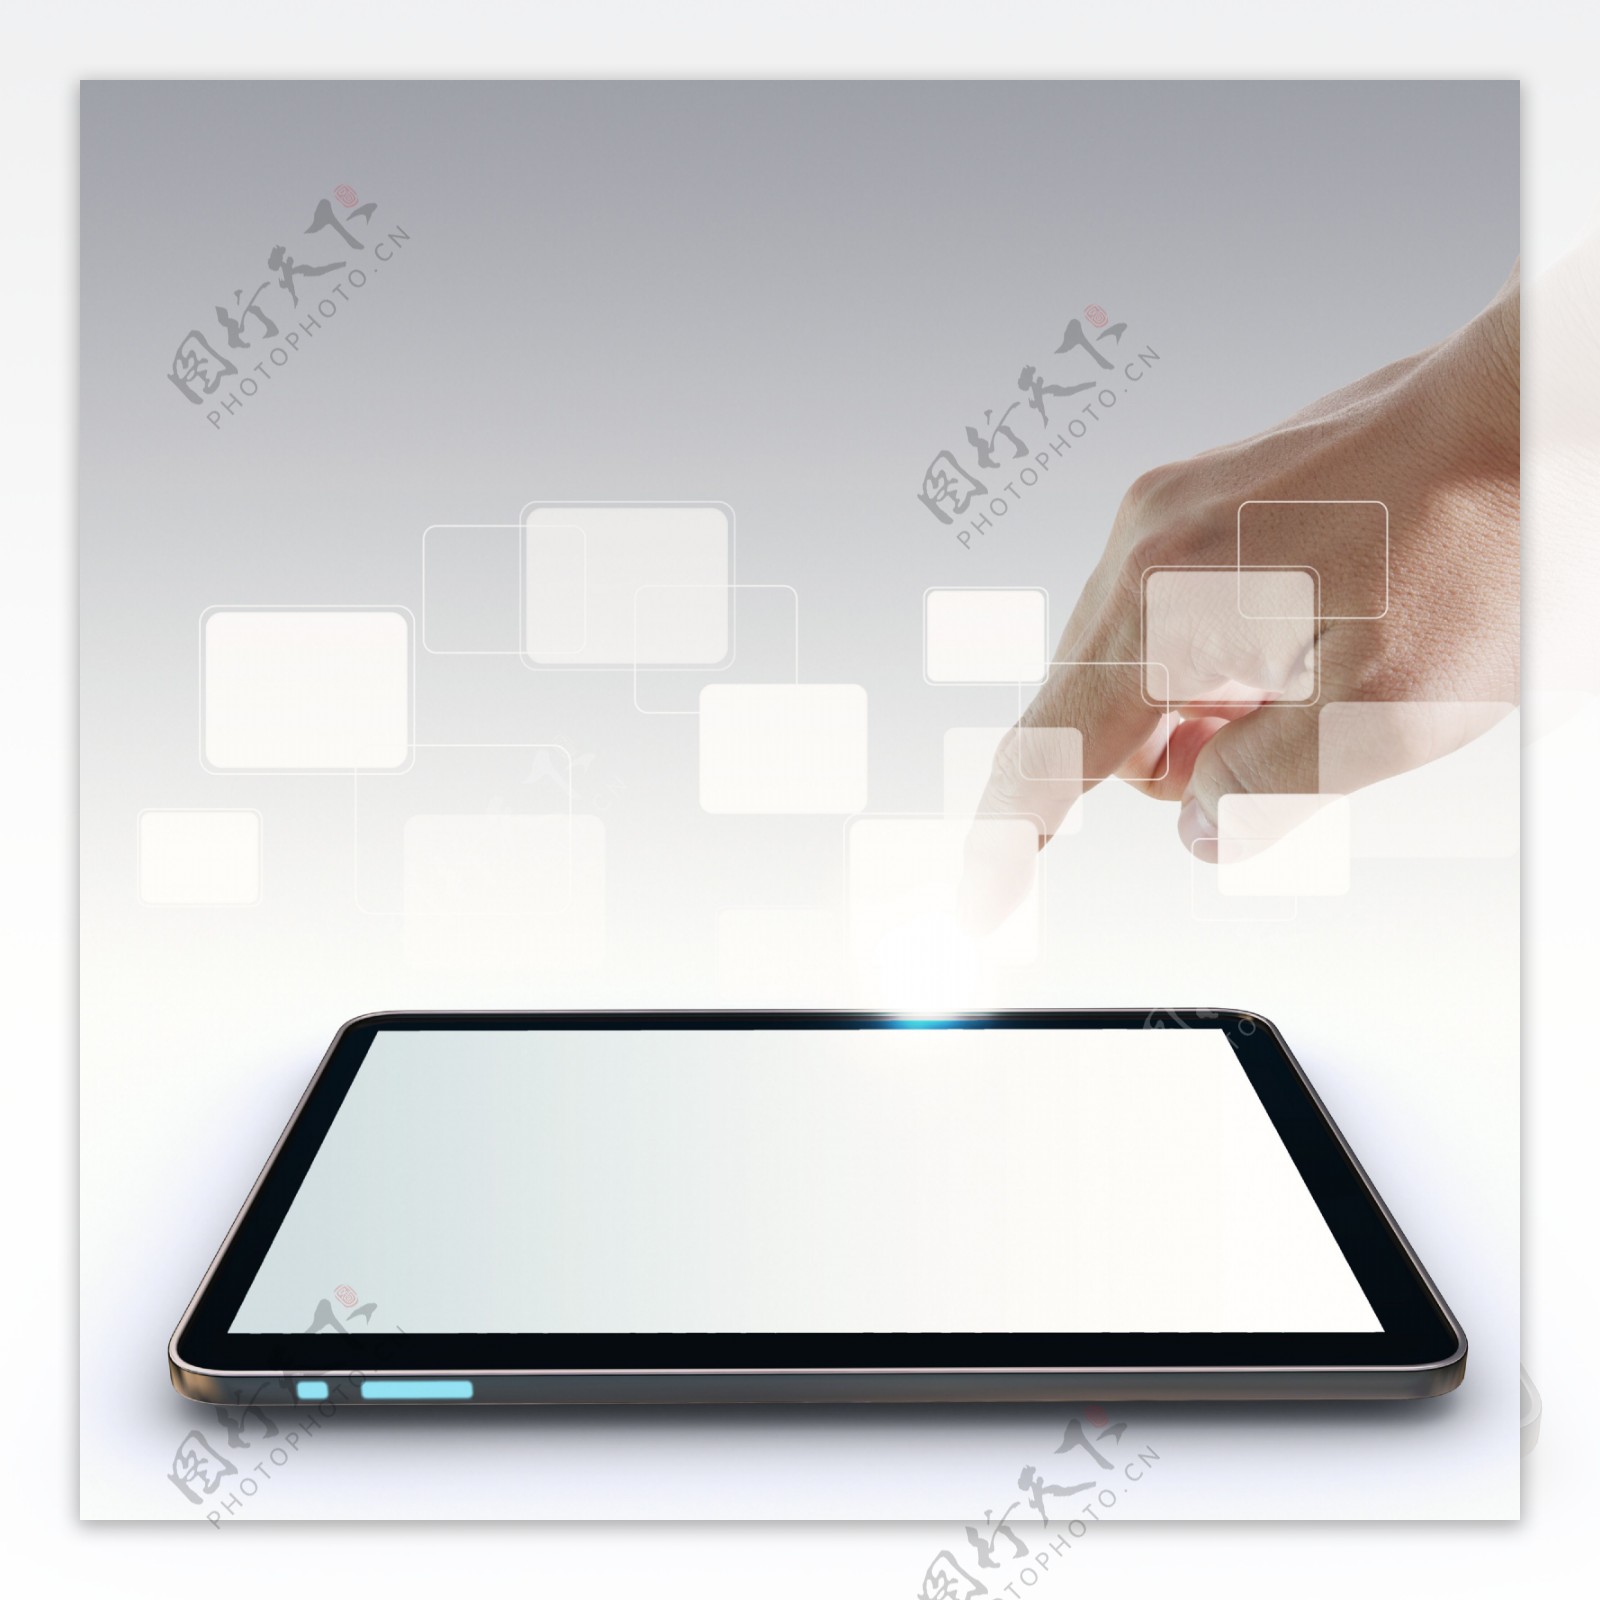 手指在触摸屏上的触摸板和空白的虚拟按钮